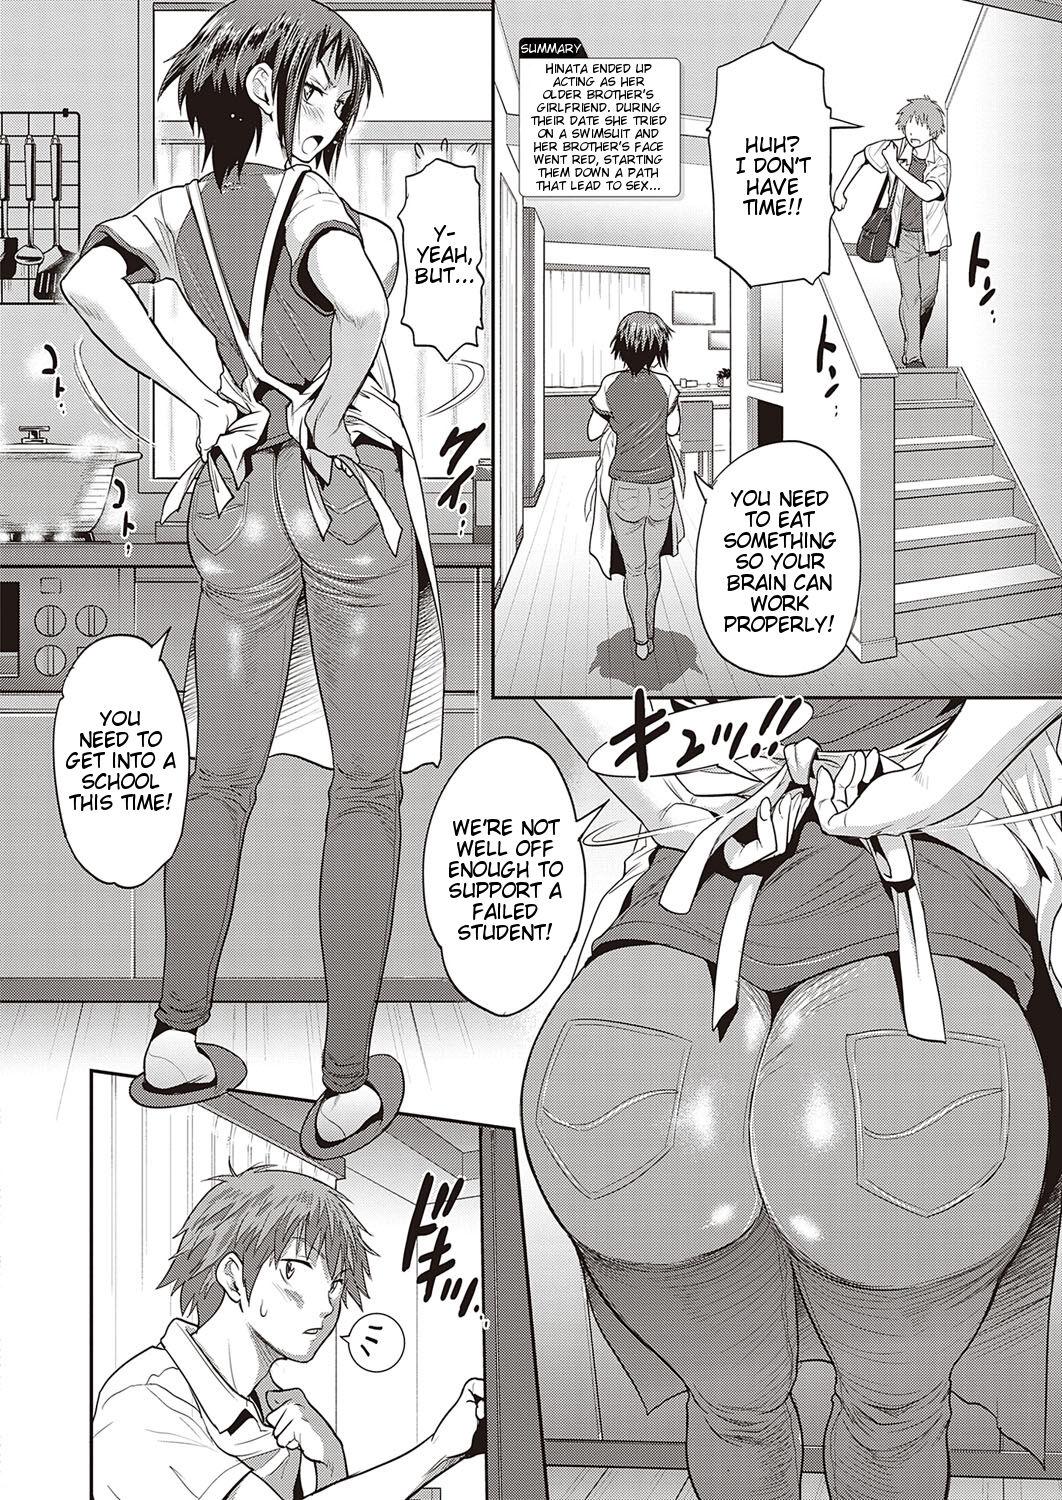 Latex Hinata Hinata Sucks - Page 2